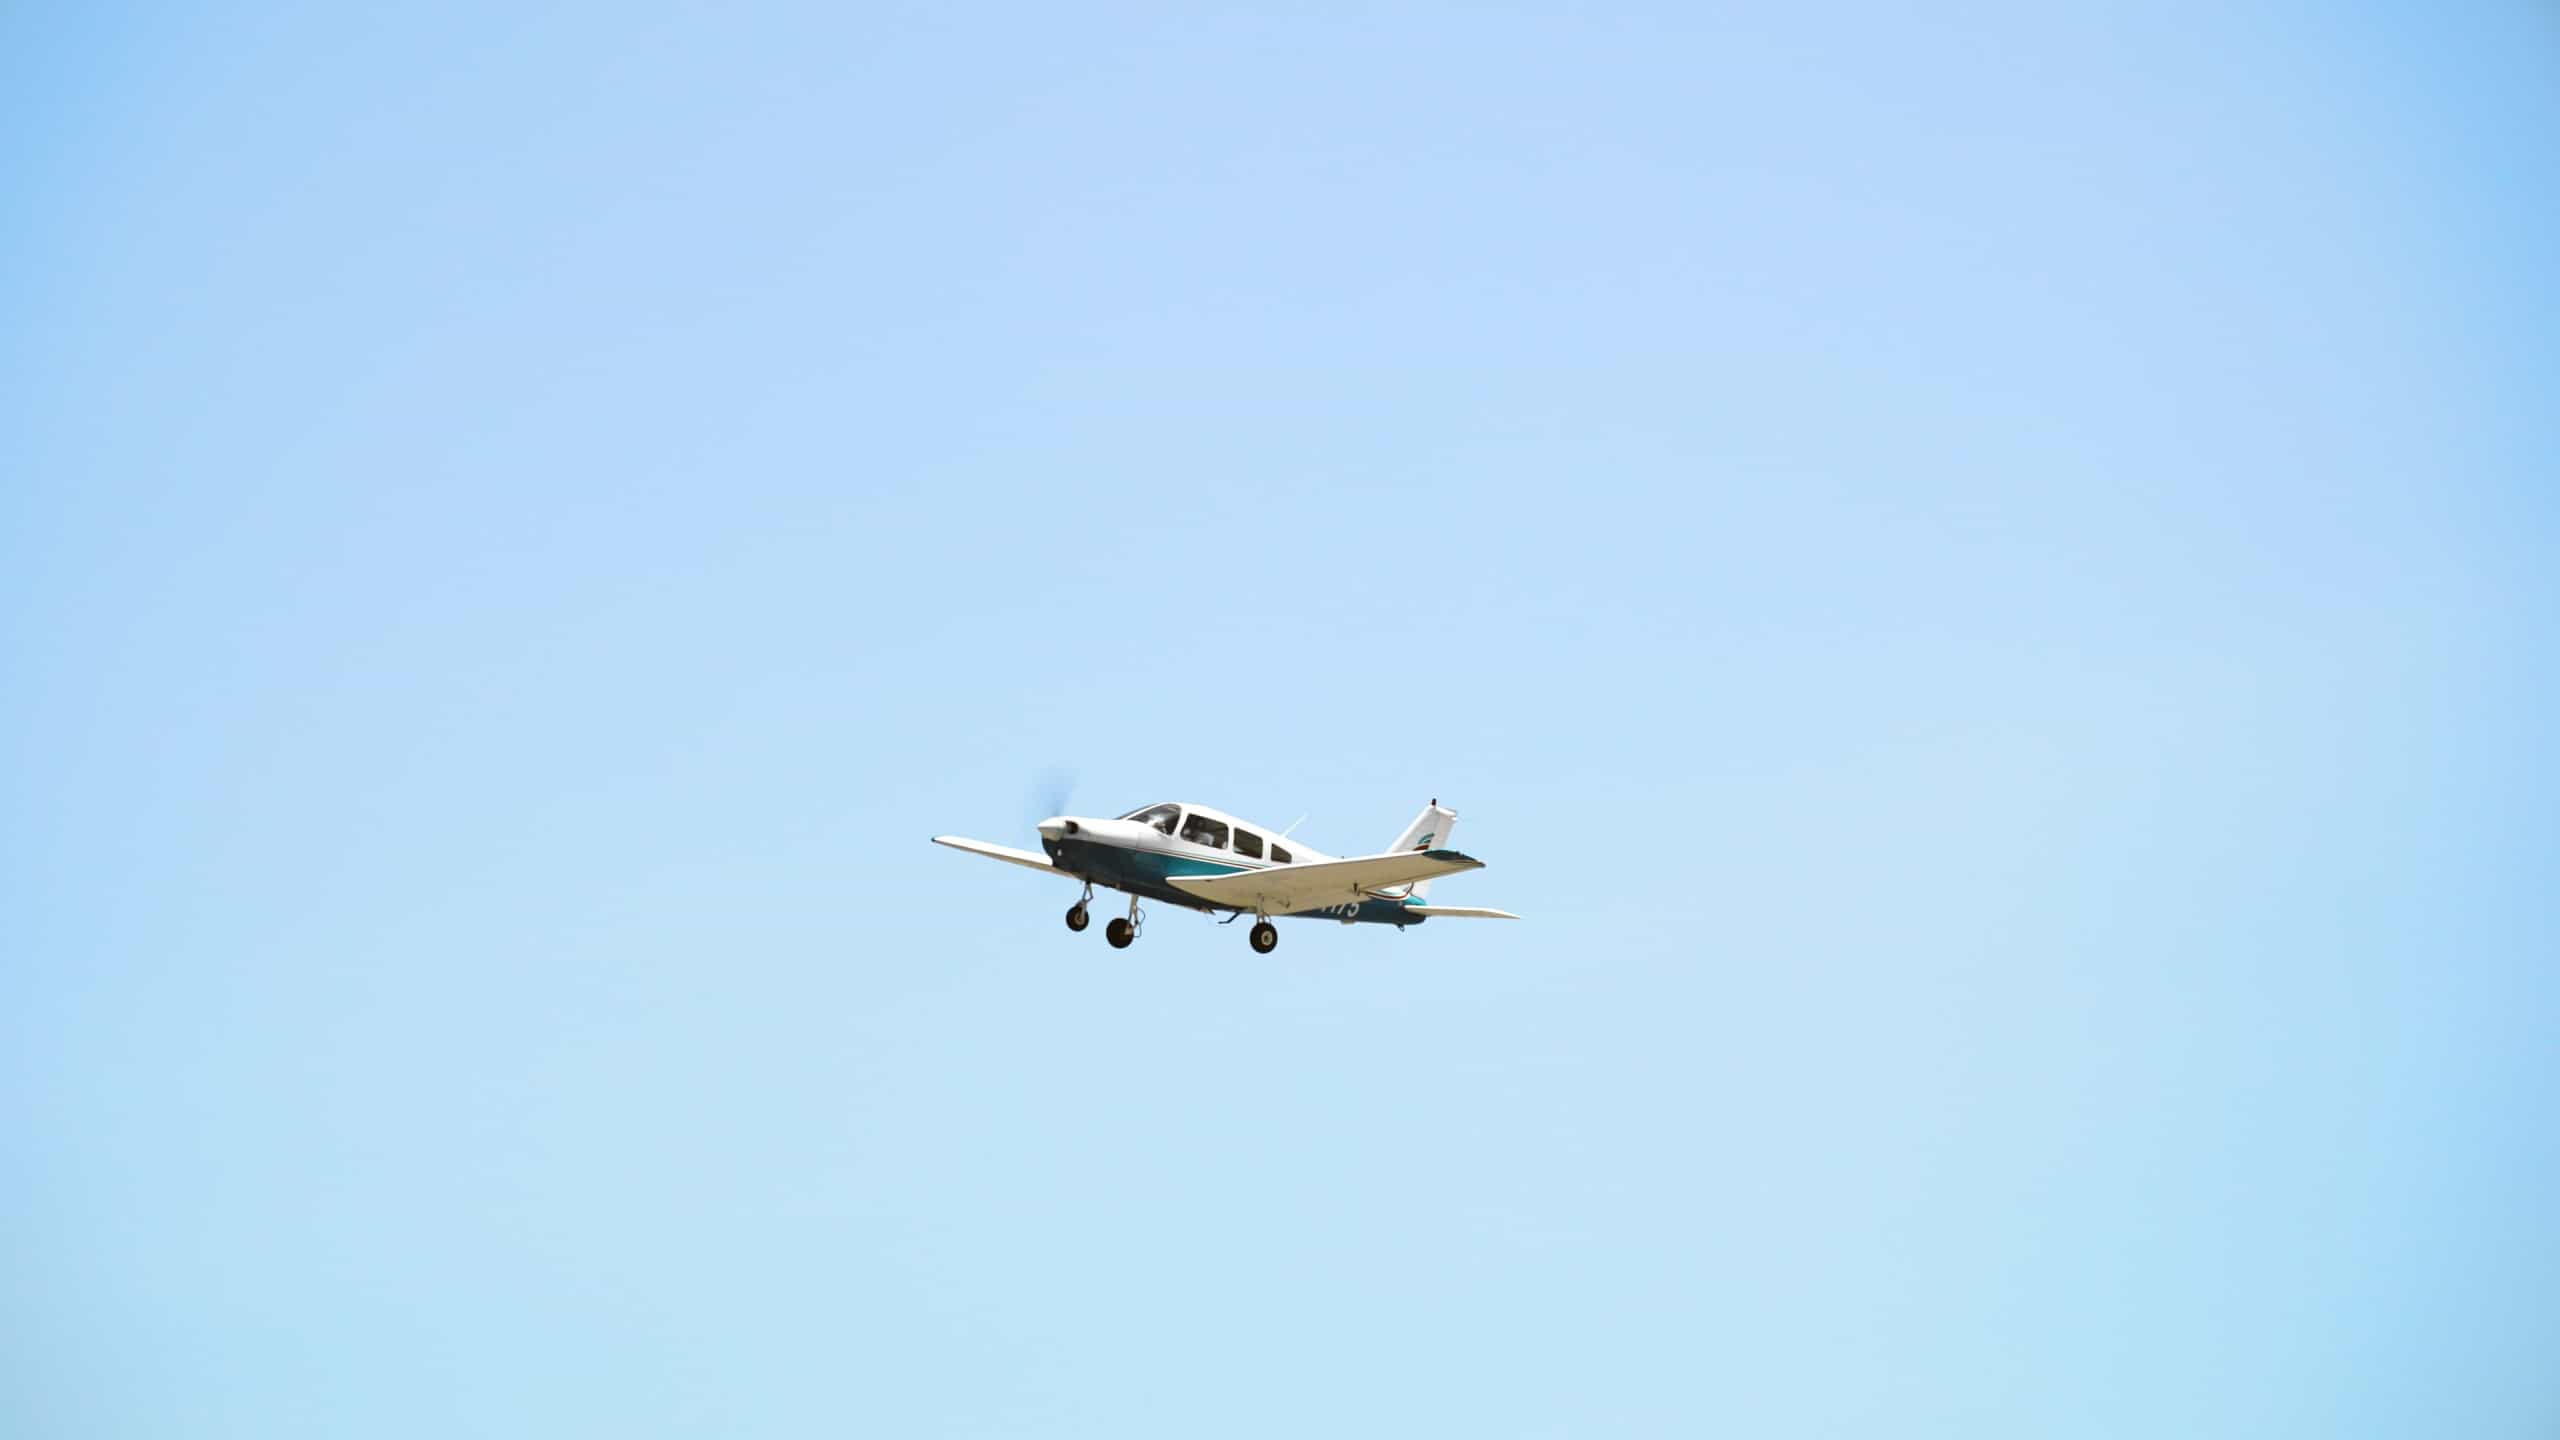 A Paris Air small airplane against a clear blue sky